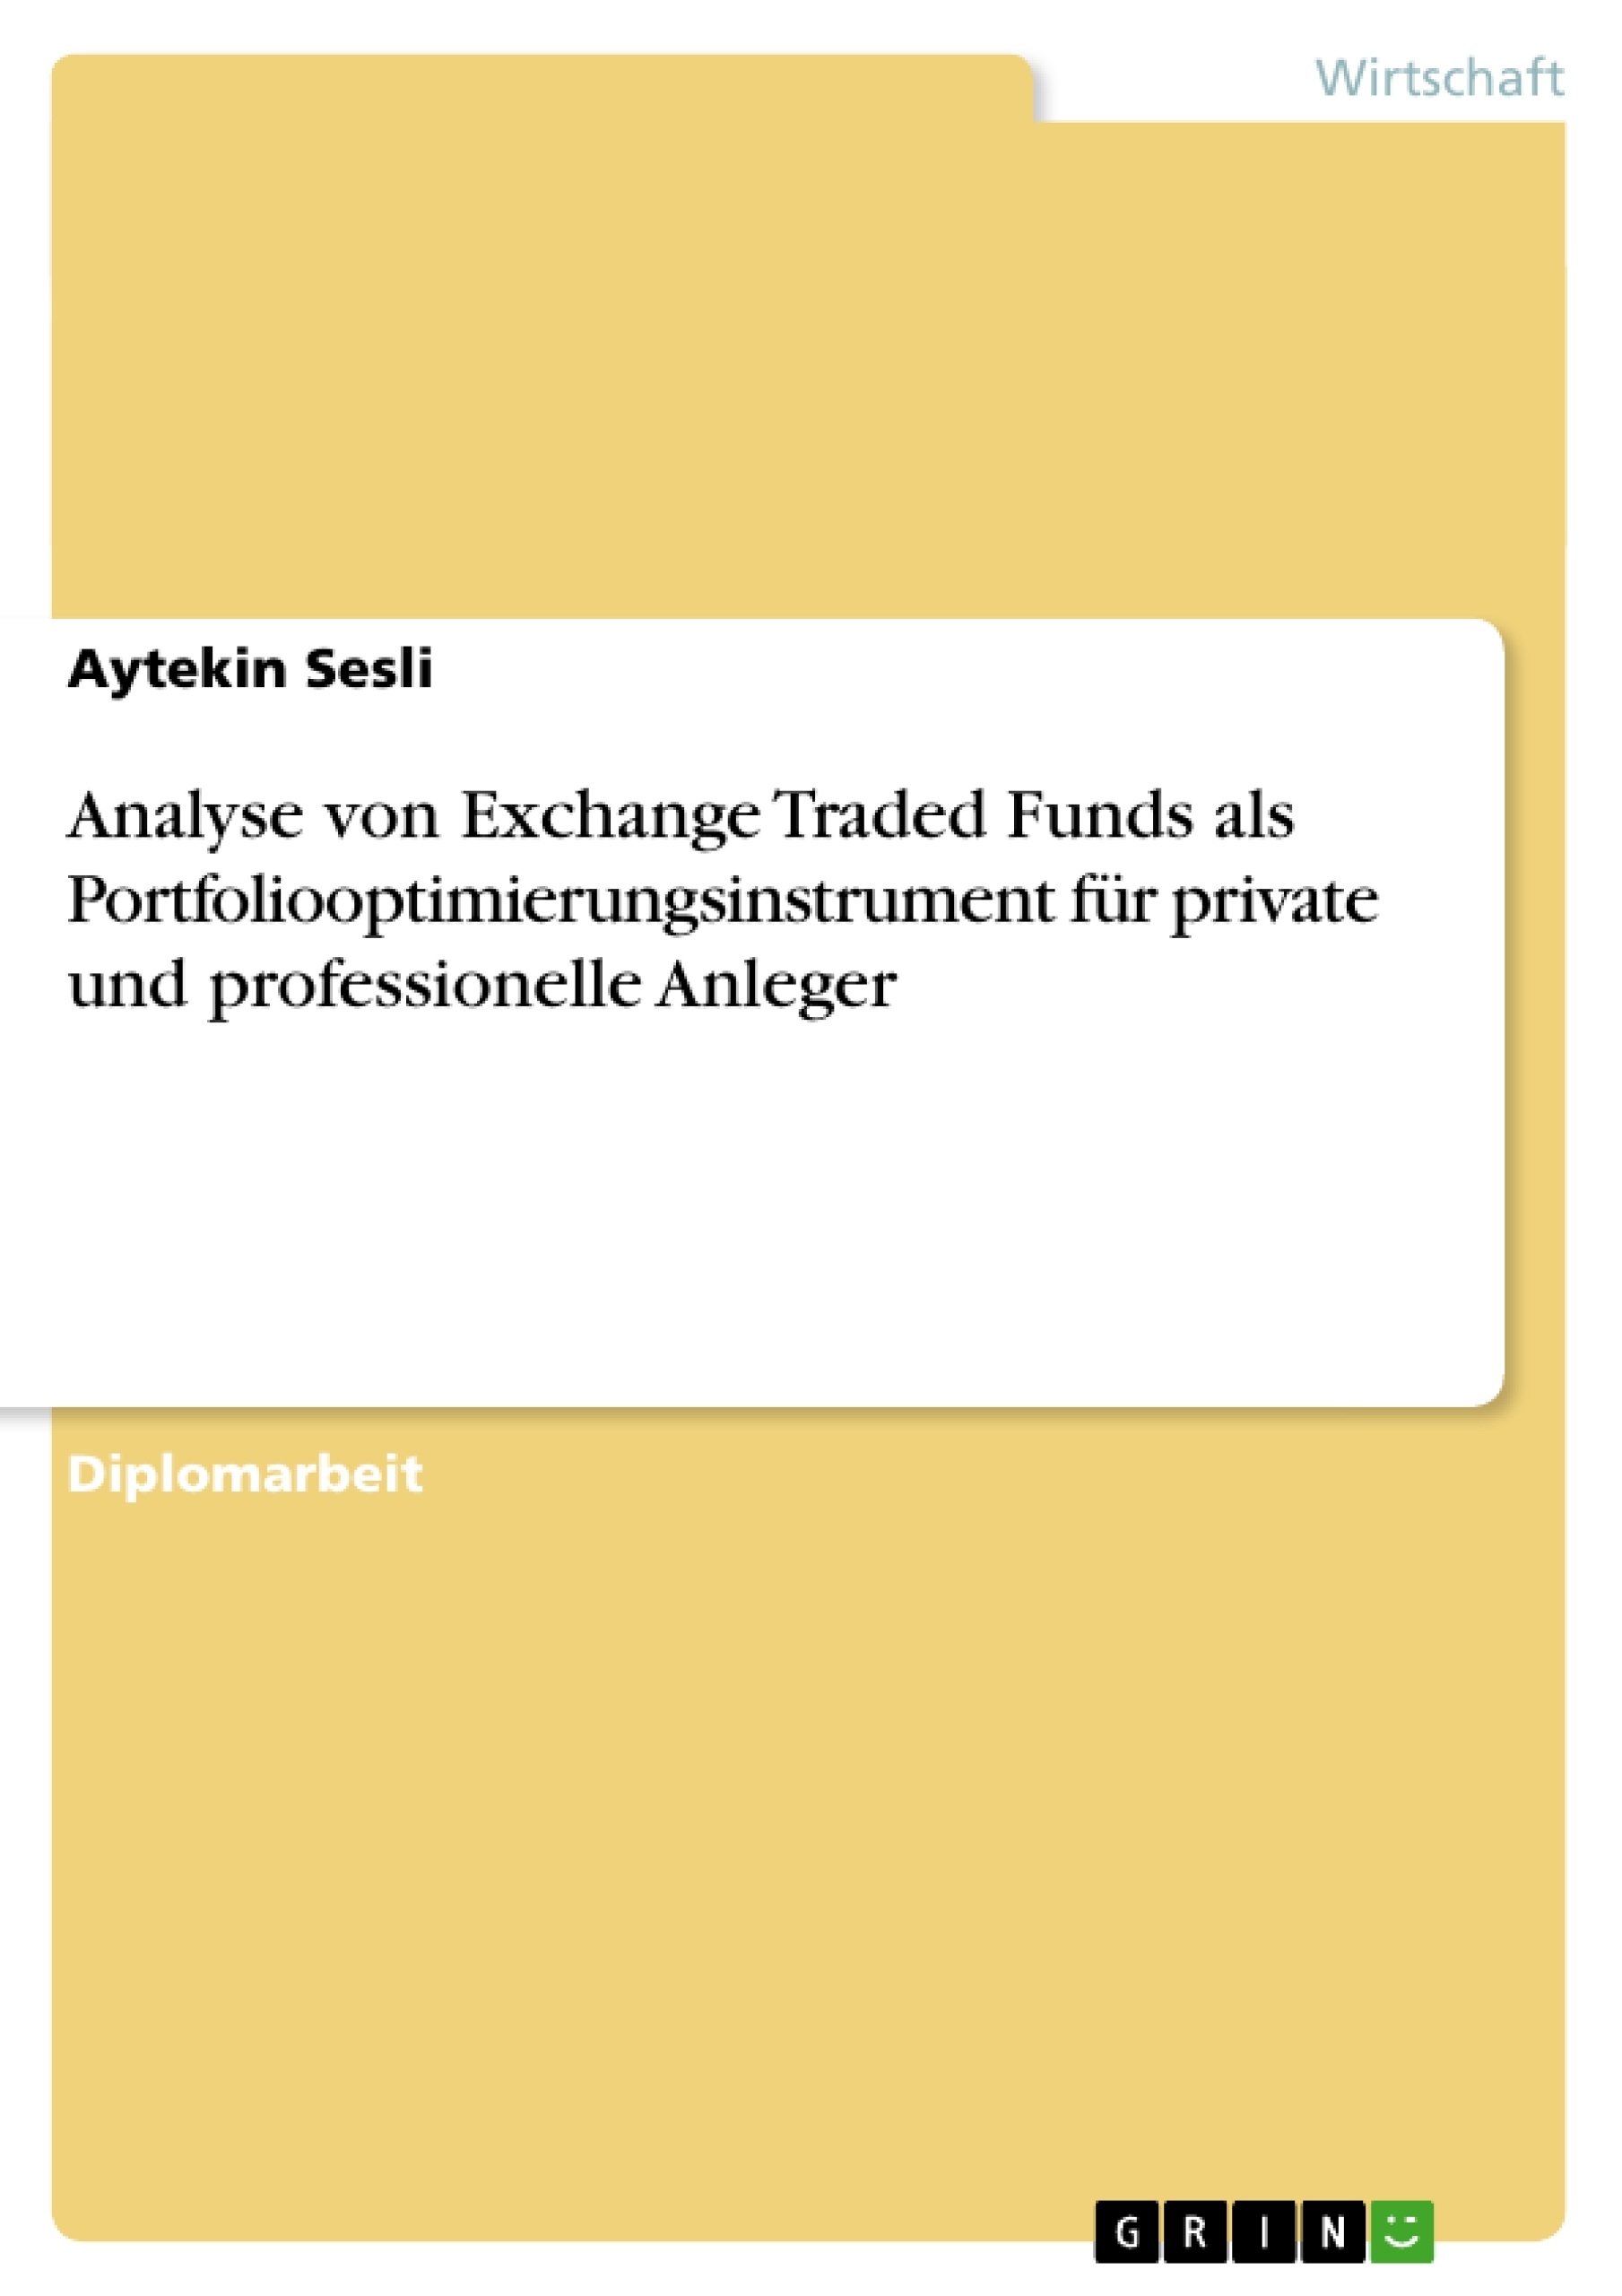 Titel: Analyse von Exchange Traded Funds als Portfoliooptimierungsinstrument für private und professionelle Anleger